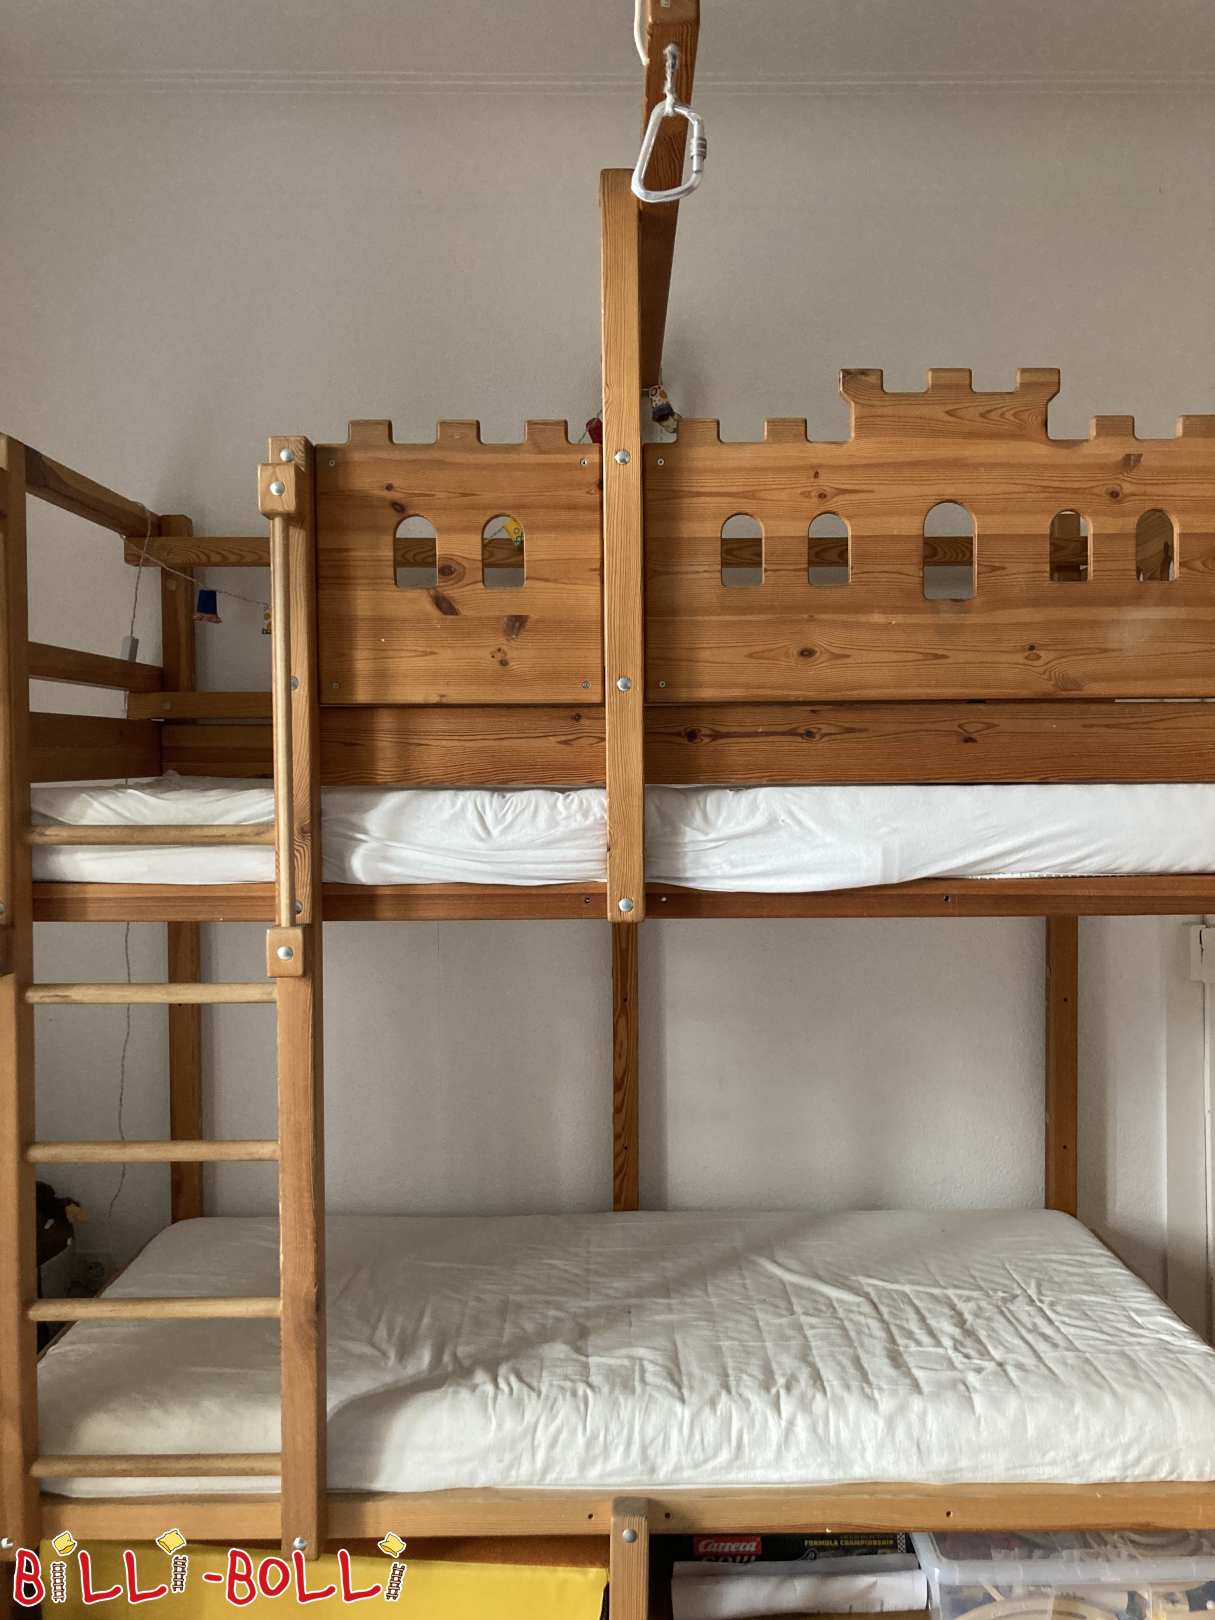 रूपांतरण सेट: मचान बिस्तर जो बच्चे के साथ एक चारपाई बिस्तर में बढ़ता है (श्रेणी: सहायक उपकरण/एक्सटेंशन पार्ट्स का इस्तेमाल किया)